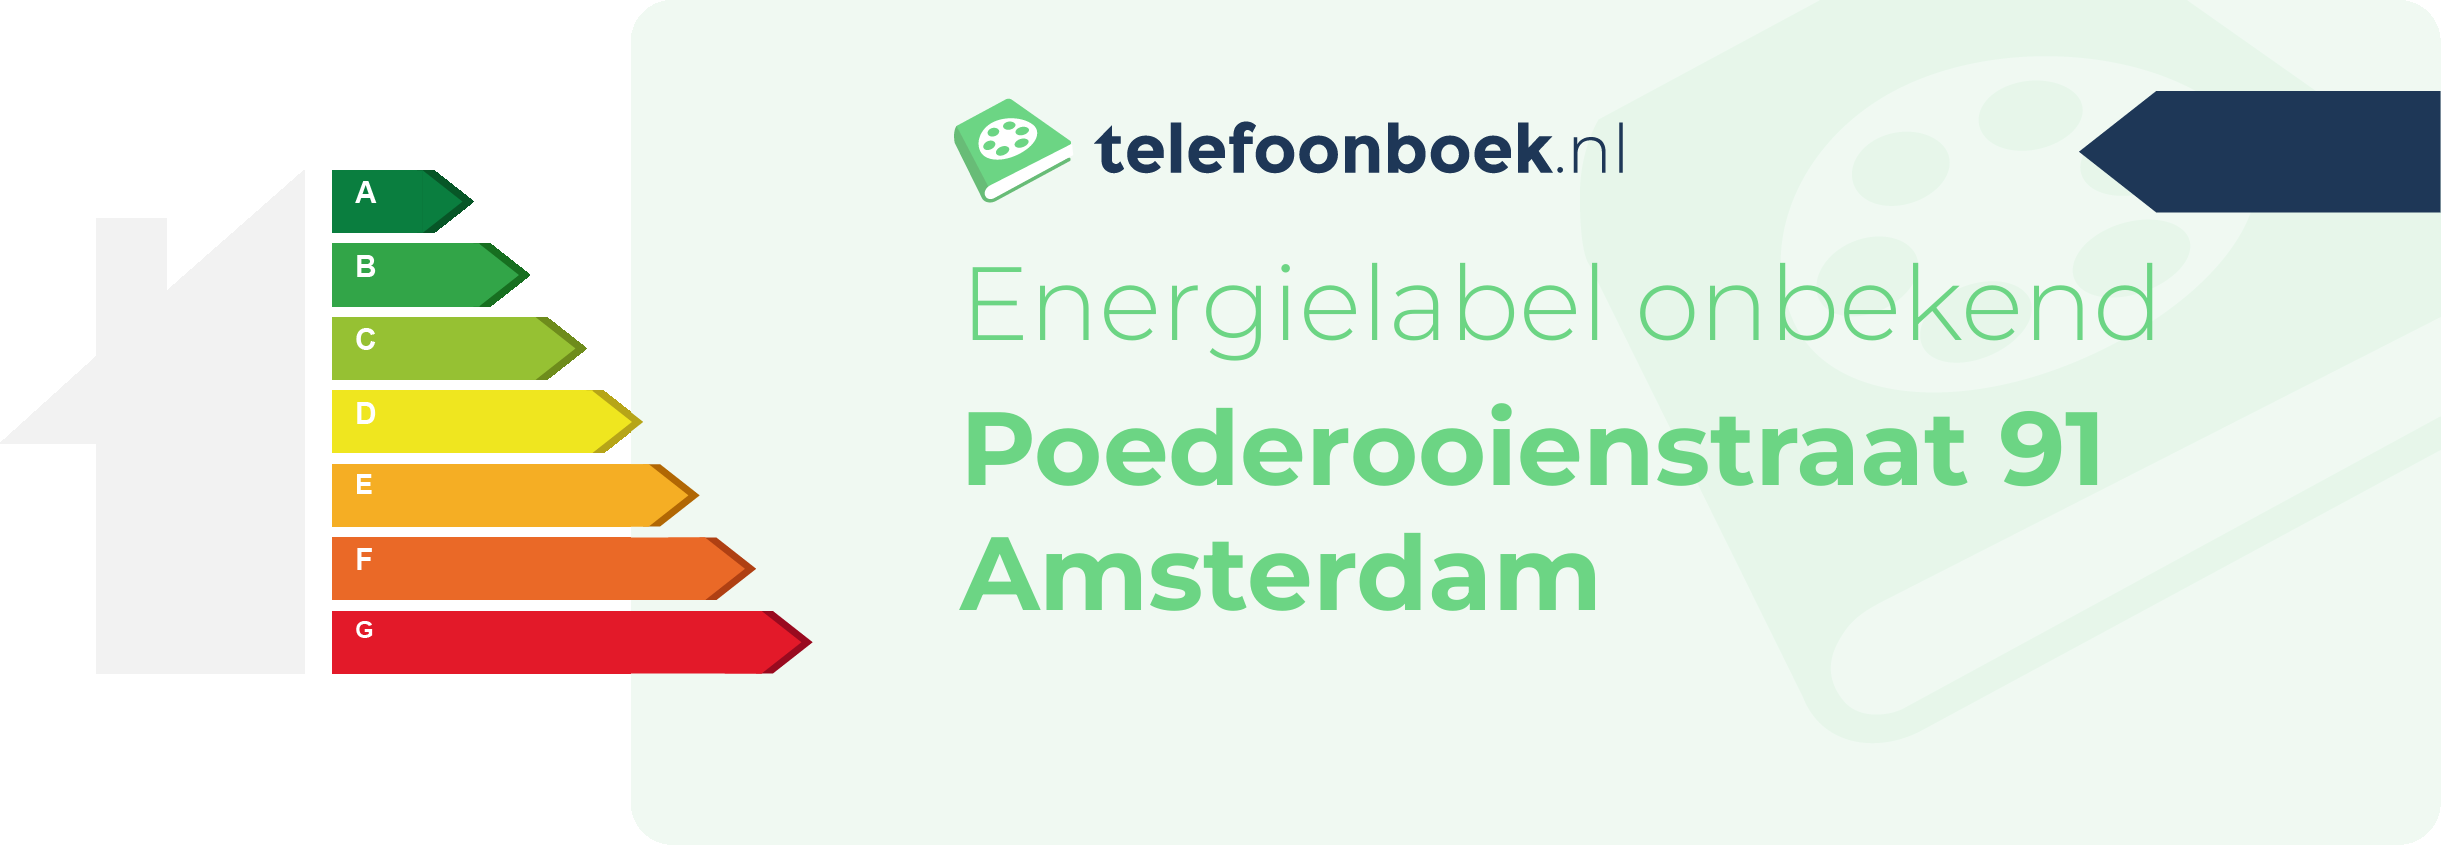 Energielabel Poederooienstraat 91 Amsterdam